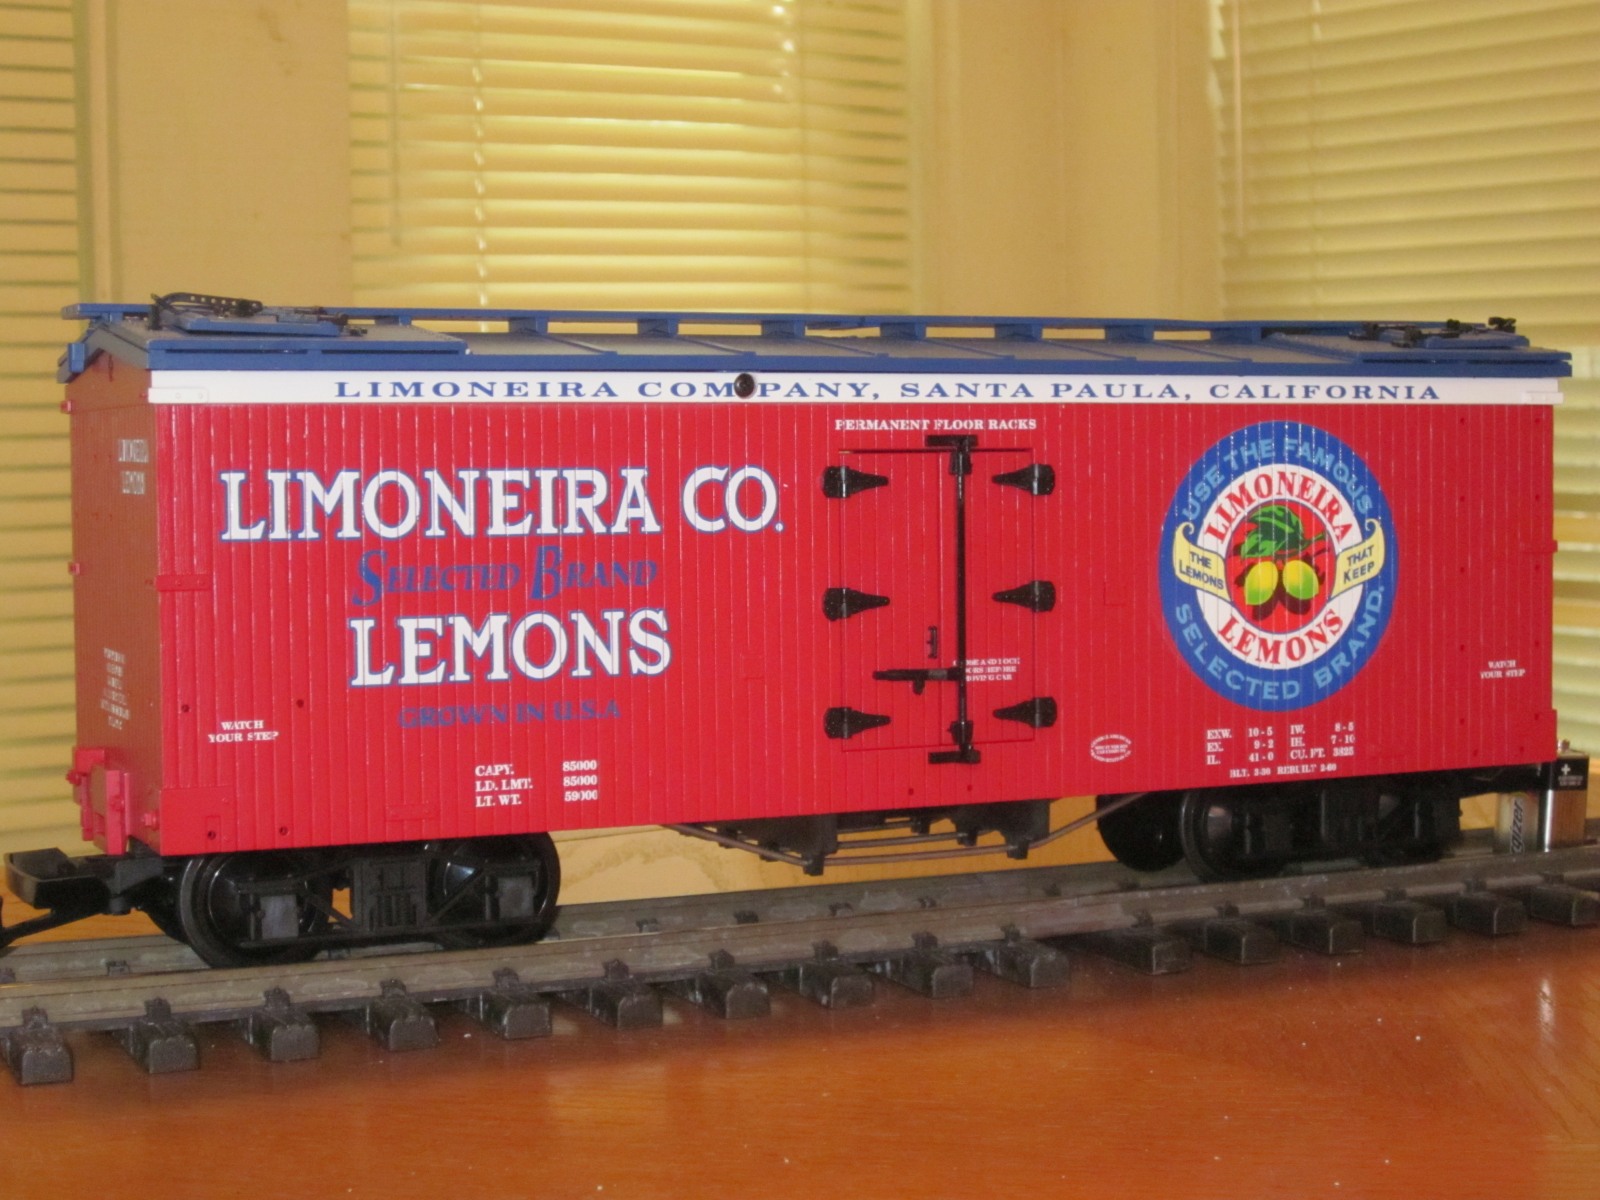 R16331 Limoneira Lemons